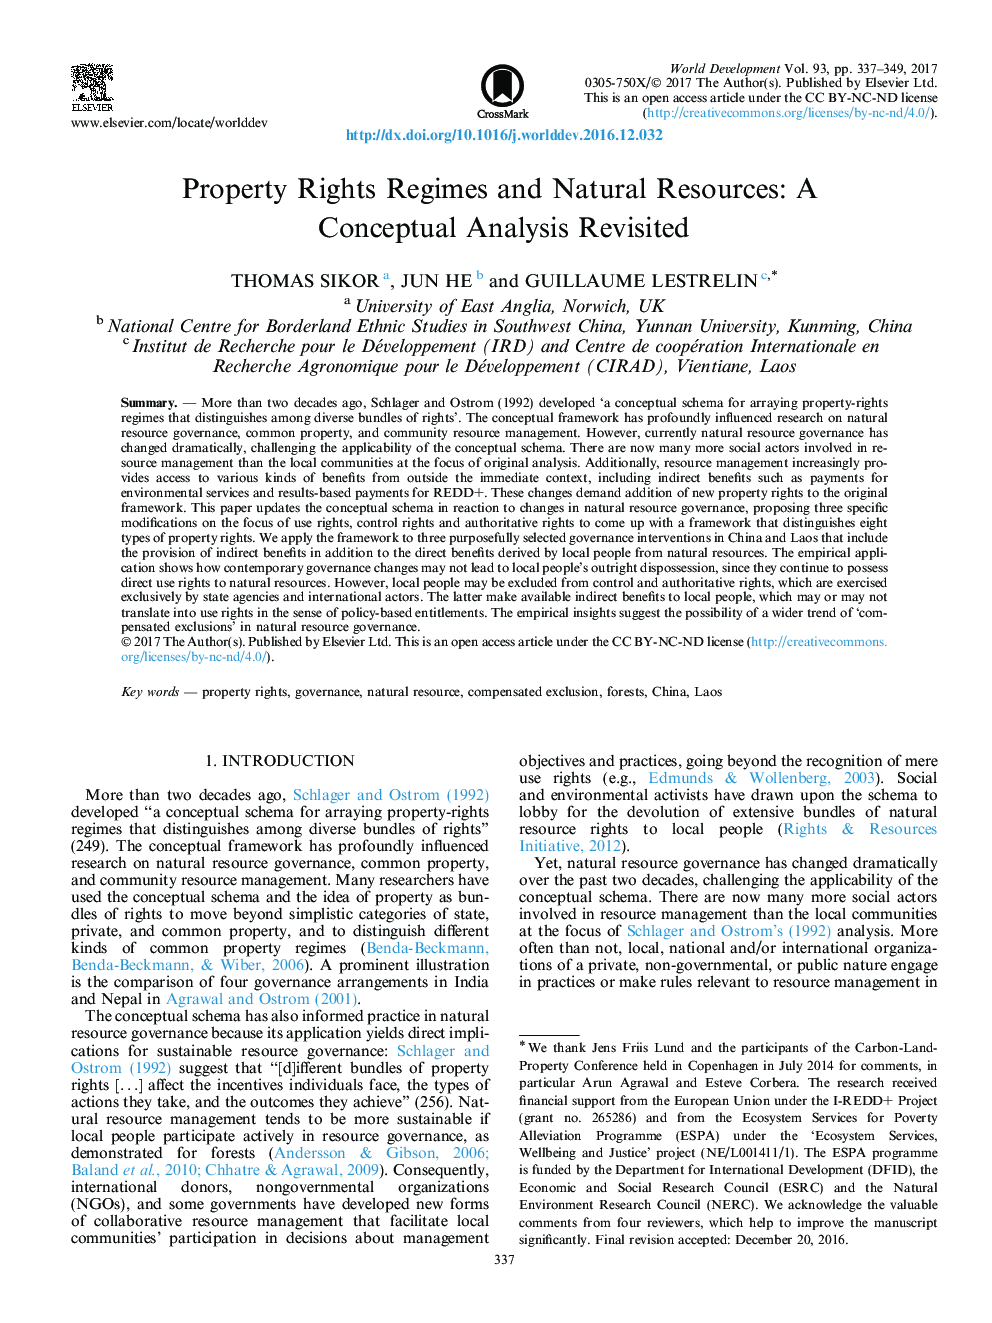 رژیم حقوق مالکیت و منابع طبیعی: یک تحلیل مفهومی بازتولید شده است 